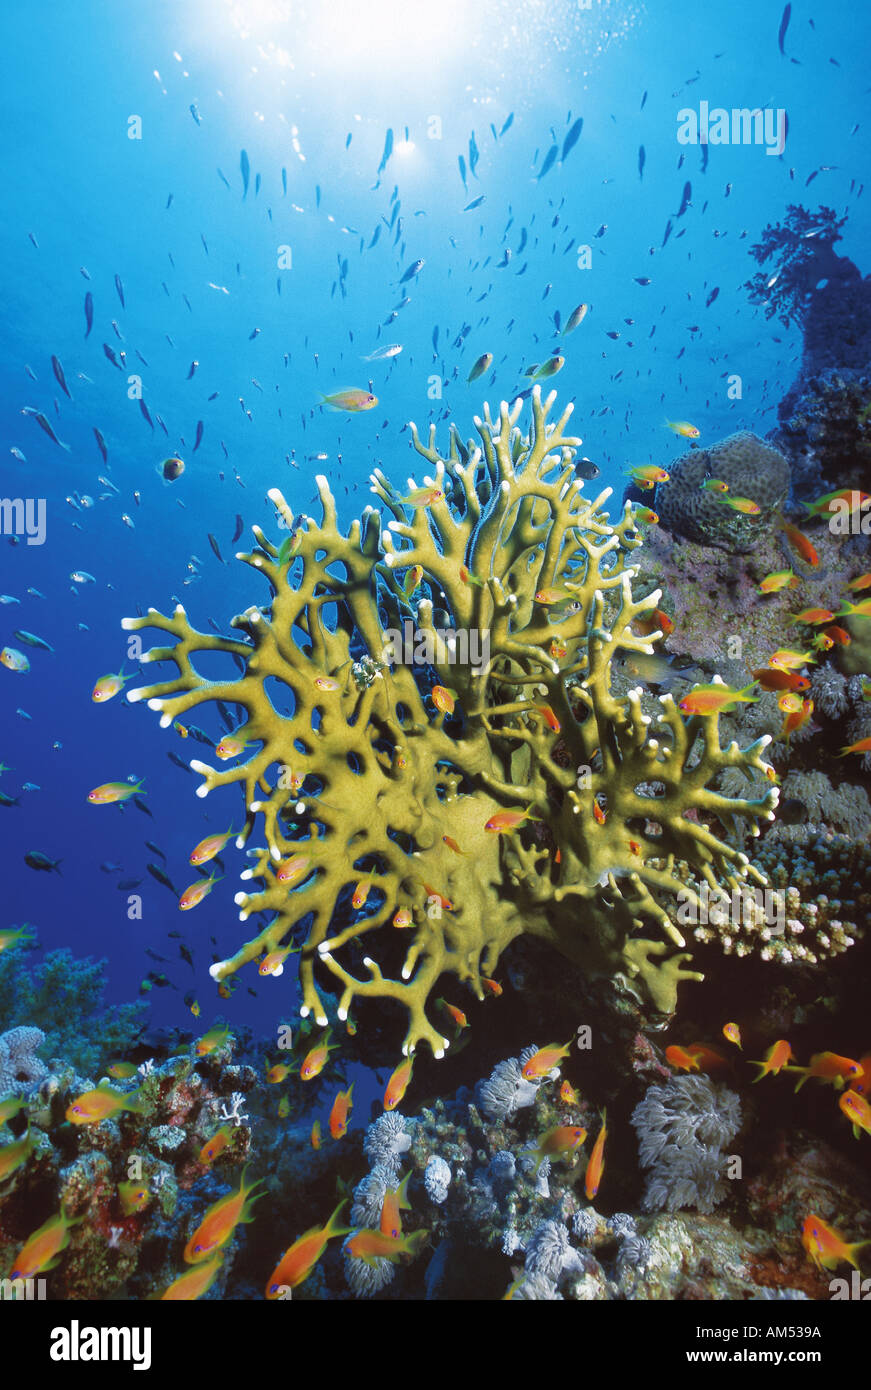 Fire coral circondata da piccoli pesci Foto Stock